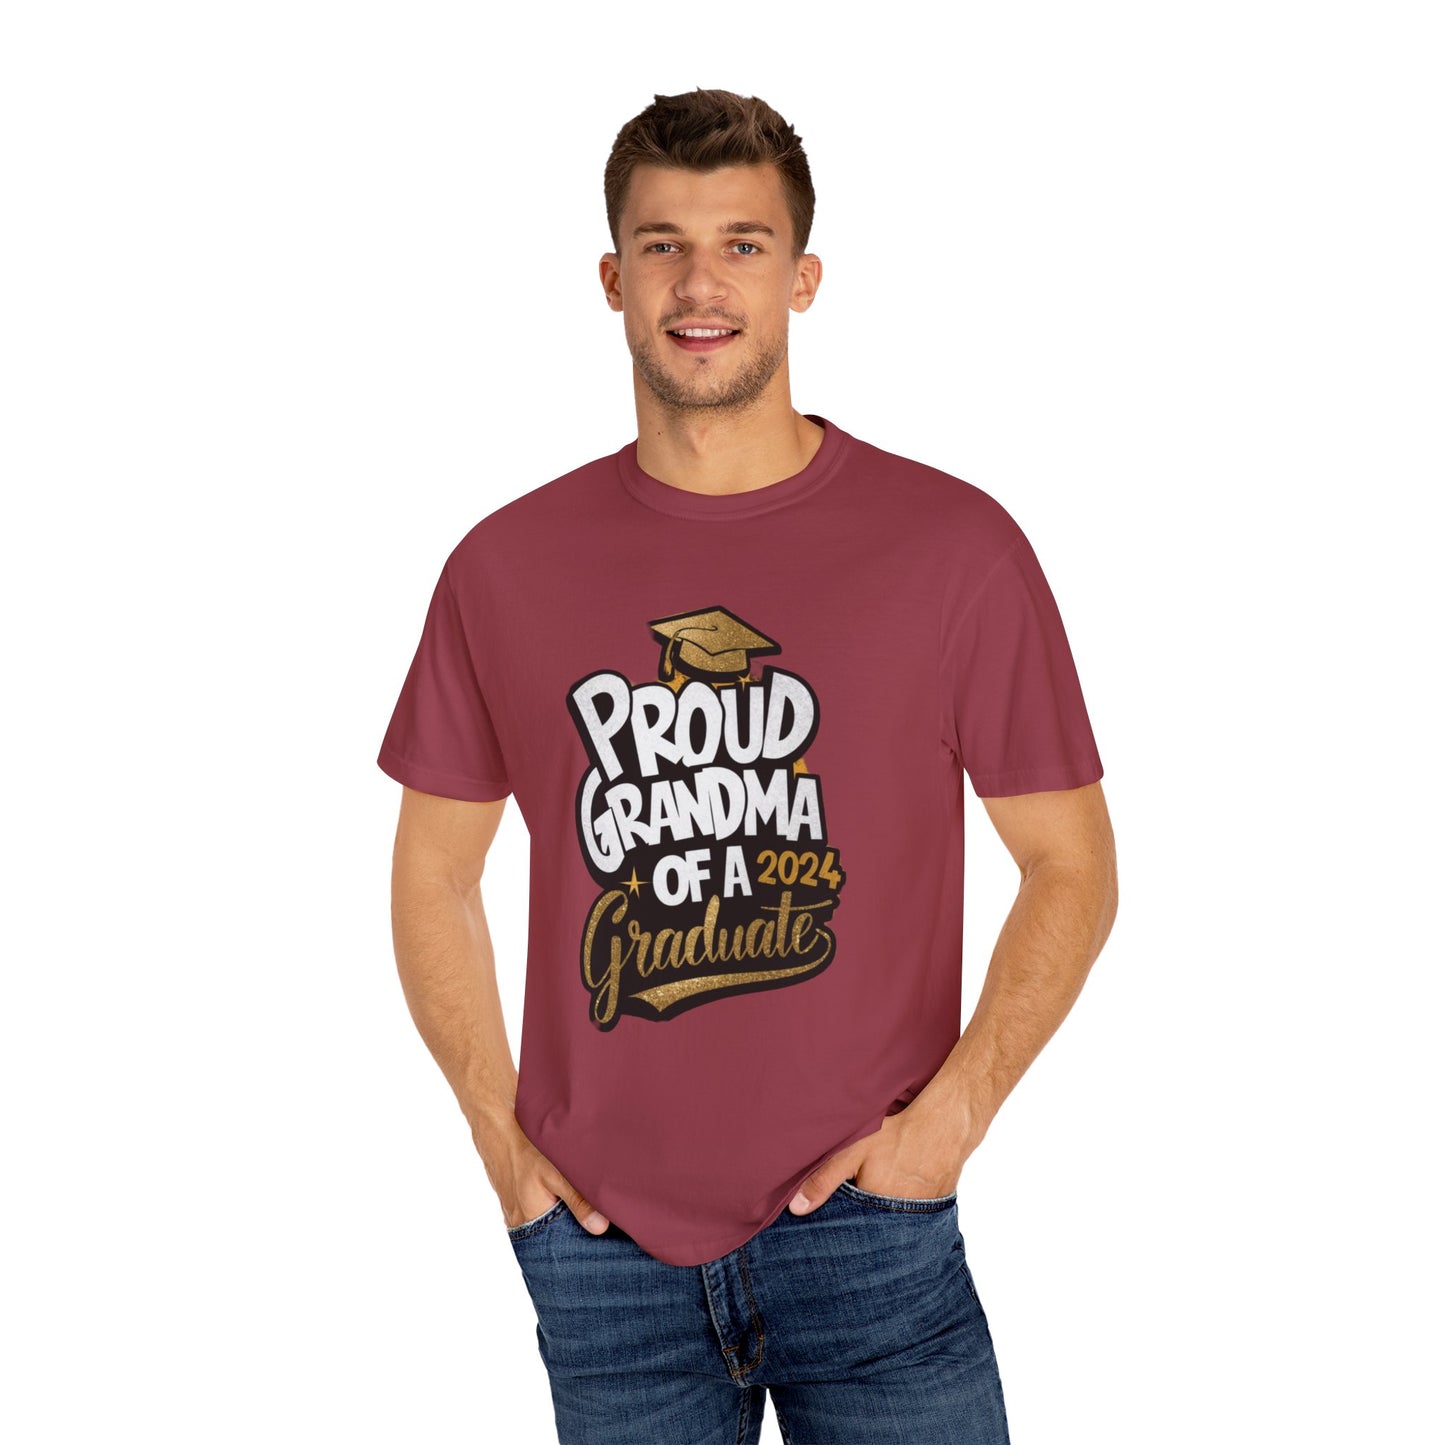 Proud of Grandma 2024 Graduate Unisex Garment-dyed T-shirt Cotton Funny Humorous Graphic Soft Premium Unisex Men Women Chili T-shirt Birthday Gift-36